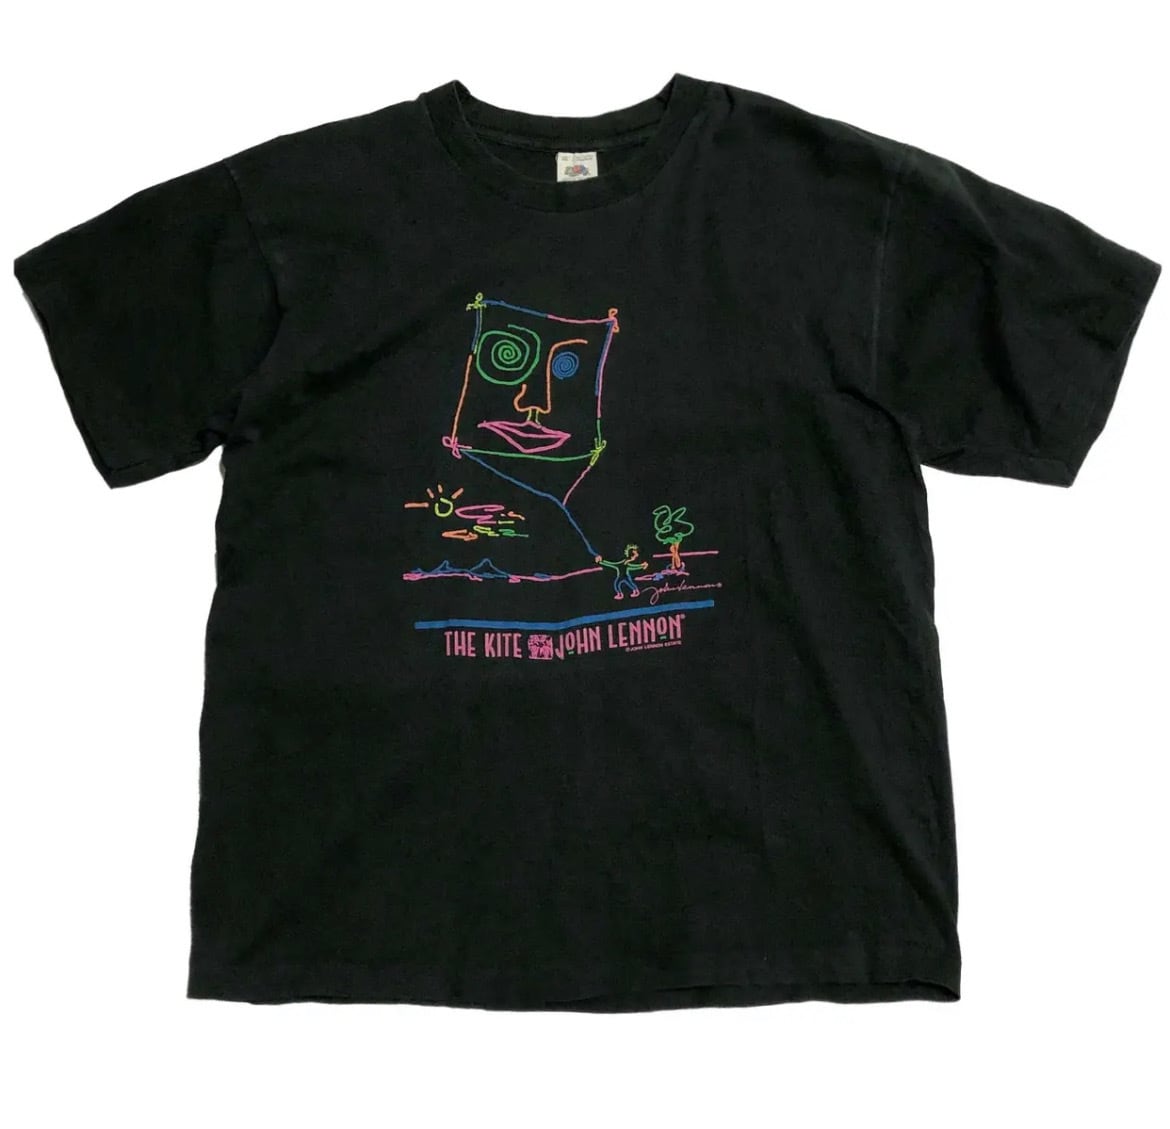 80s John Lennon 蛇雲玲音 THE KITE ネオン アート リトグラフ Tシャツ